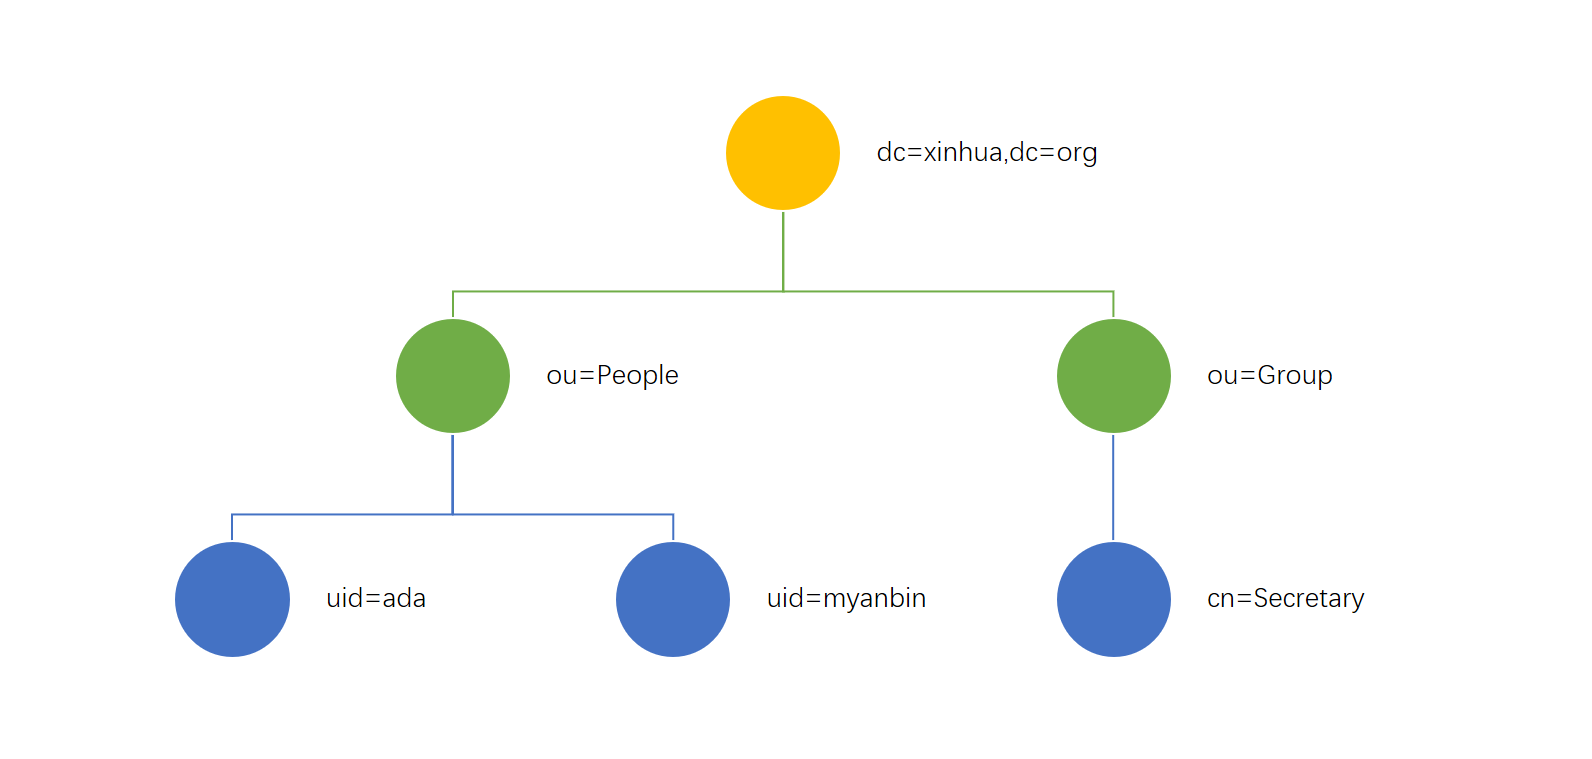 一个典型的 LDAP 目录树